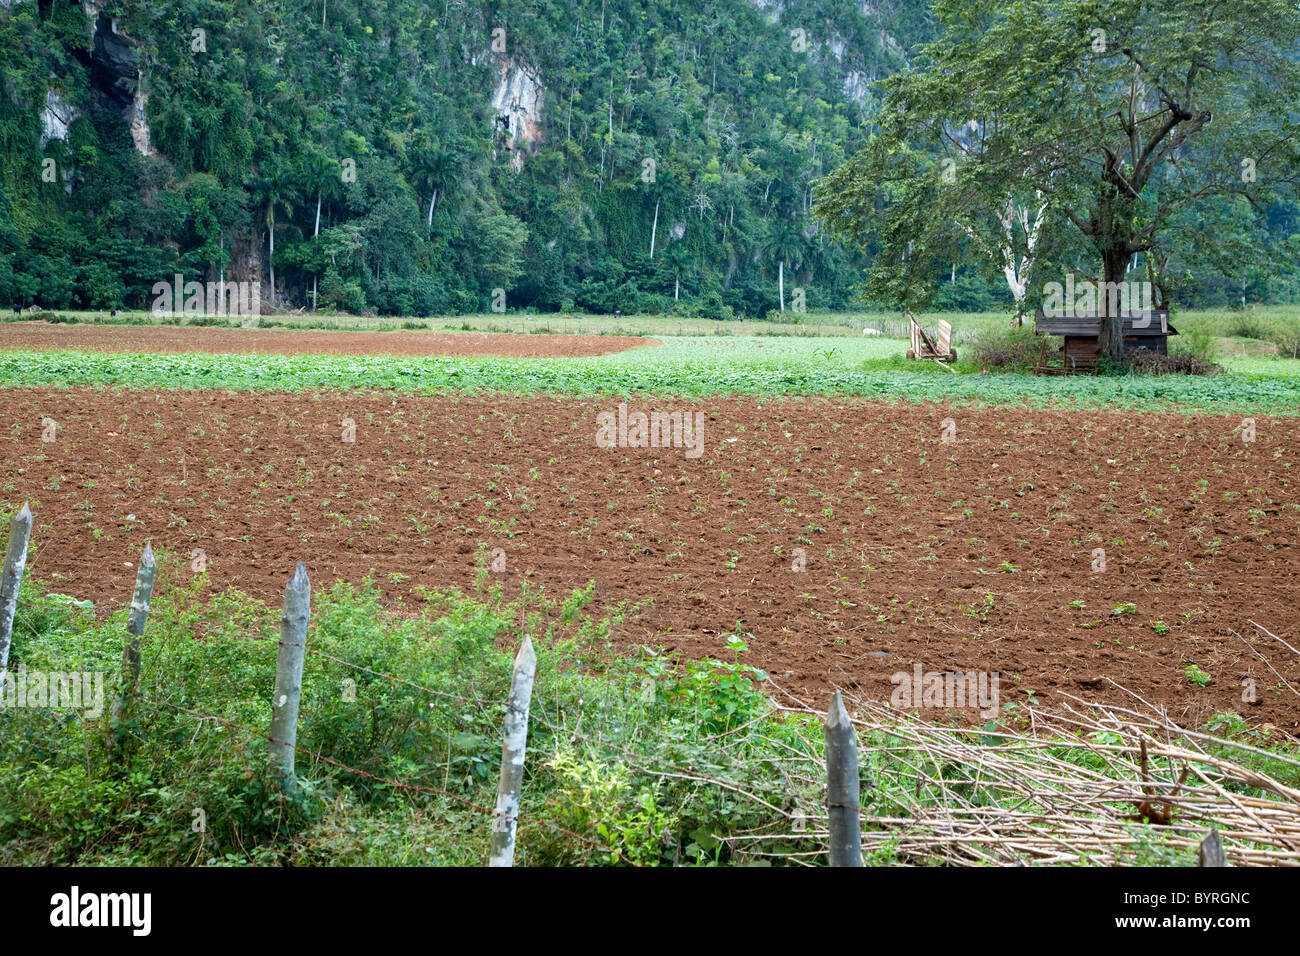 Cuba, Pinar del Rio Region, Valle de Viñales (Vinales) Area. Farmer's Field. Agricultural Scene. Stock Photo